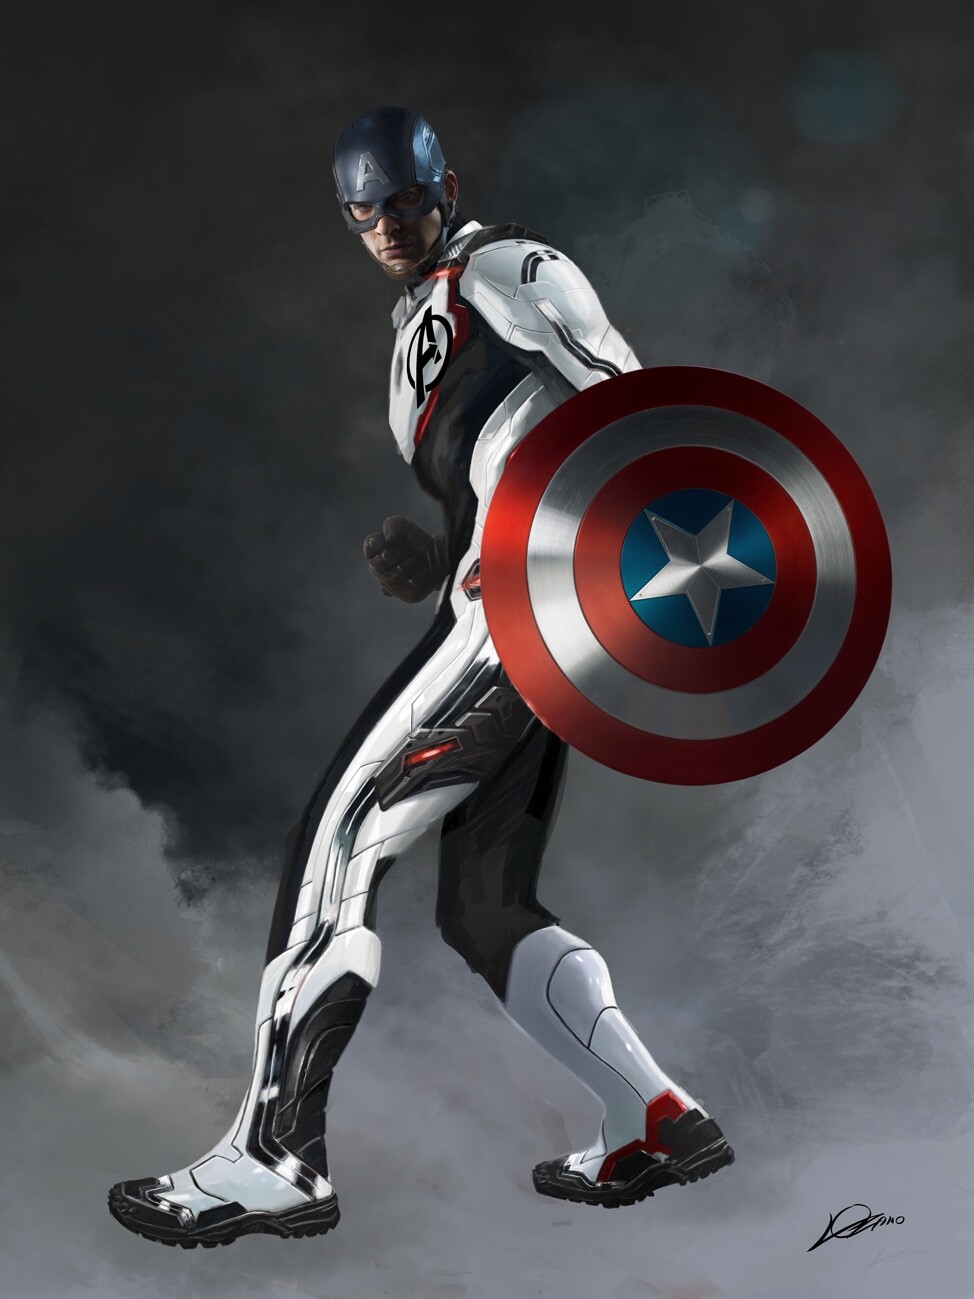 Avengers Endgame Ant-Man Poster Art Wallpapers